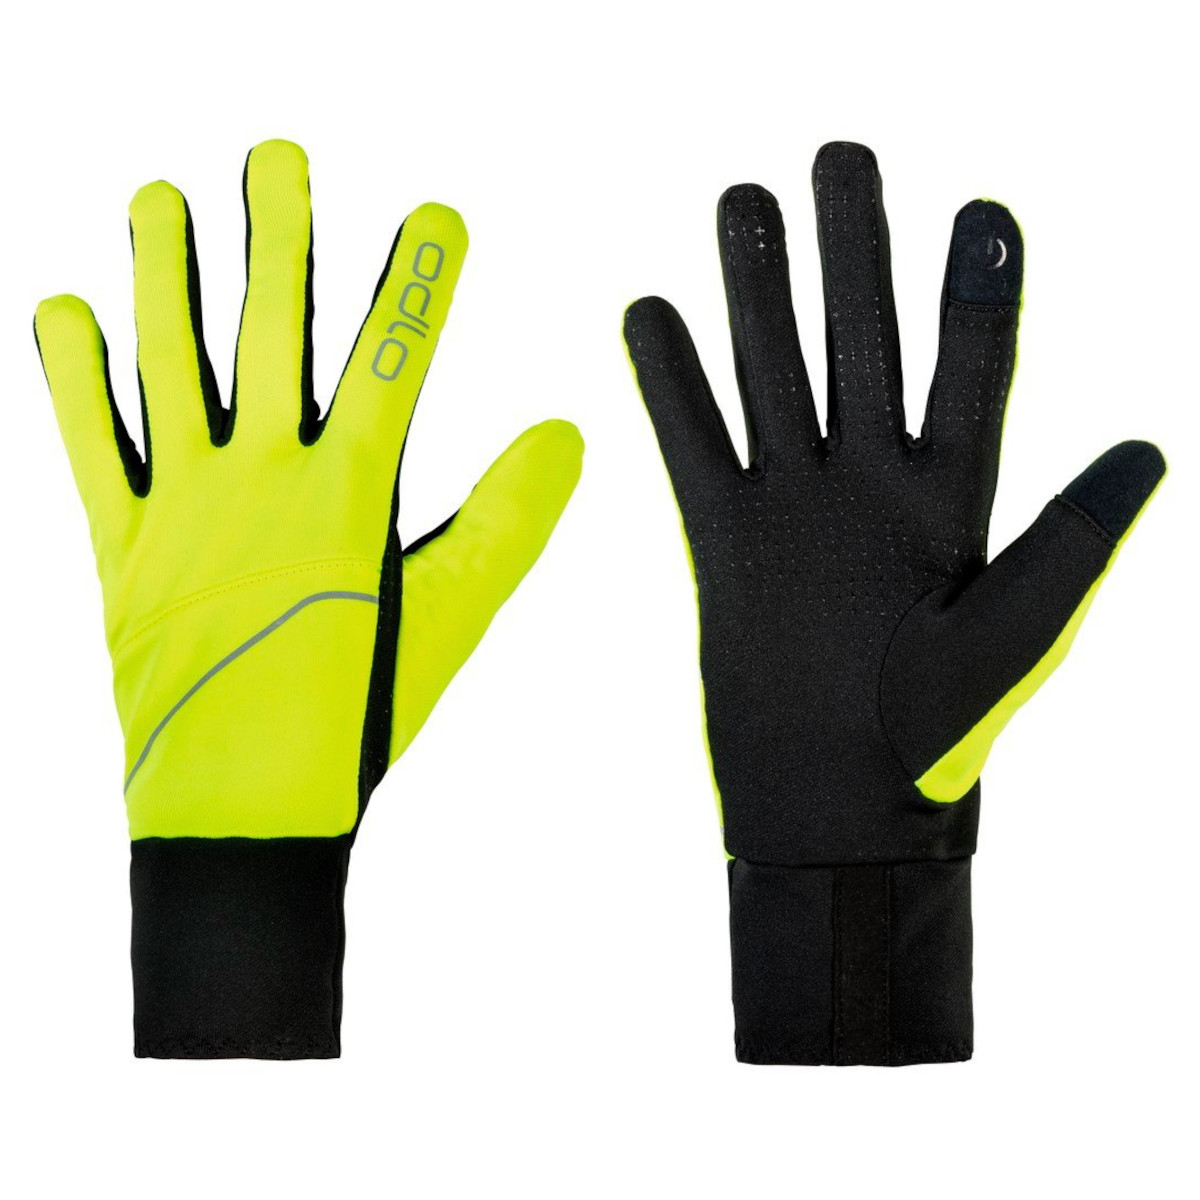 Produktbild von Odlo Intensity Safety Handschuhe - safety yellow